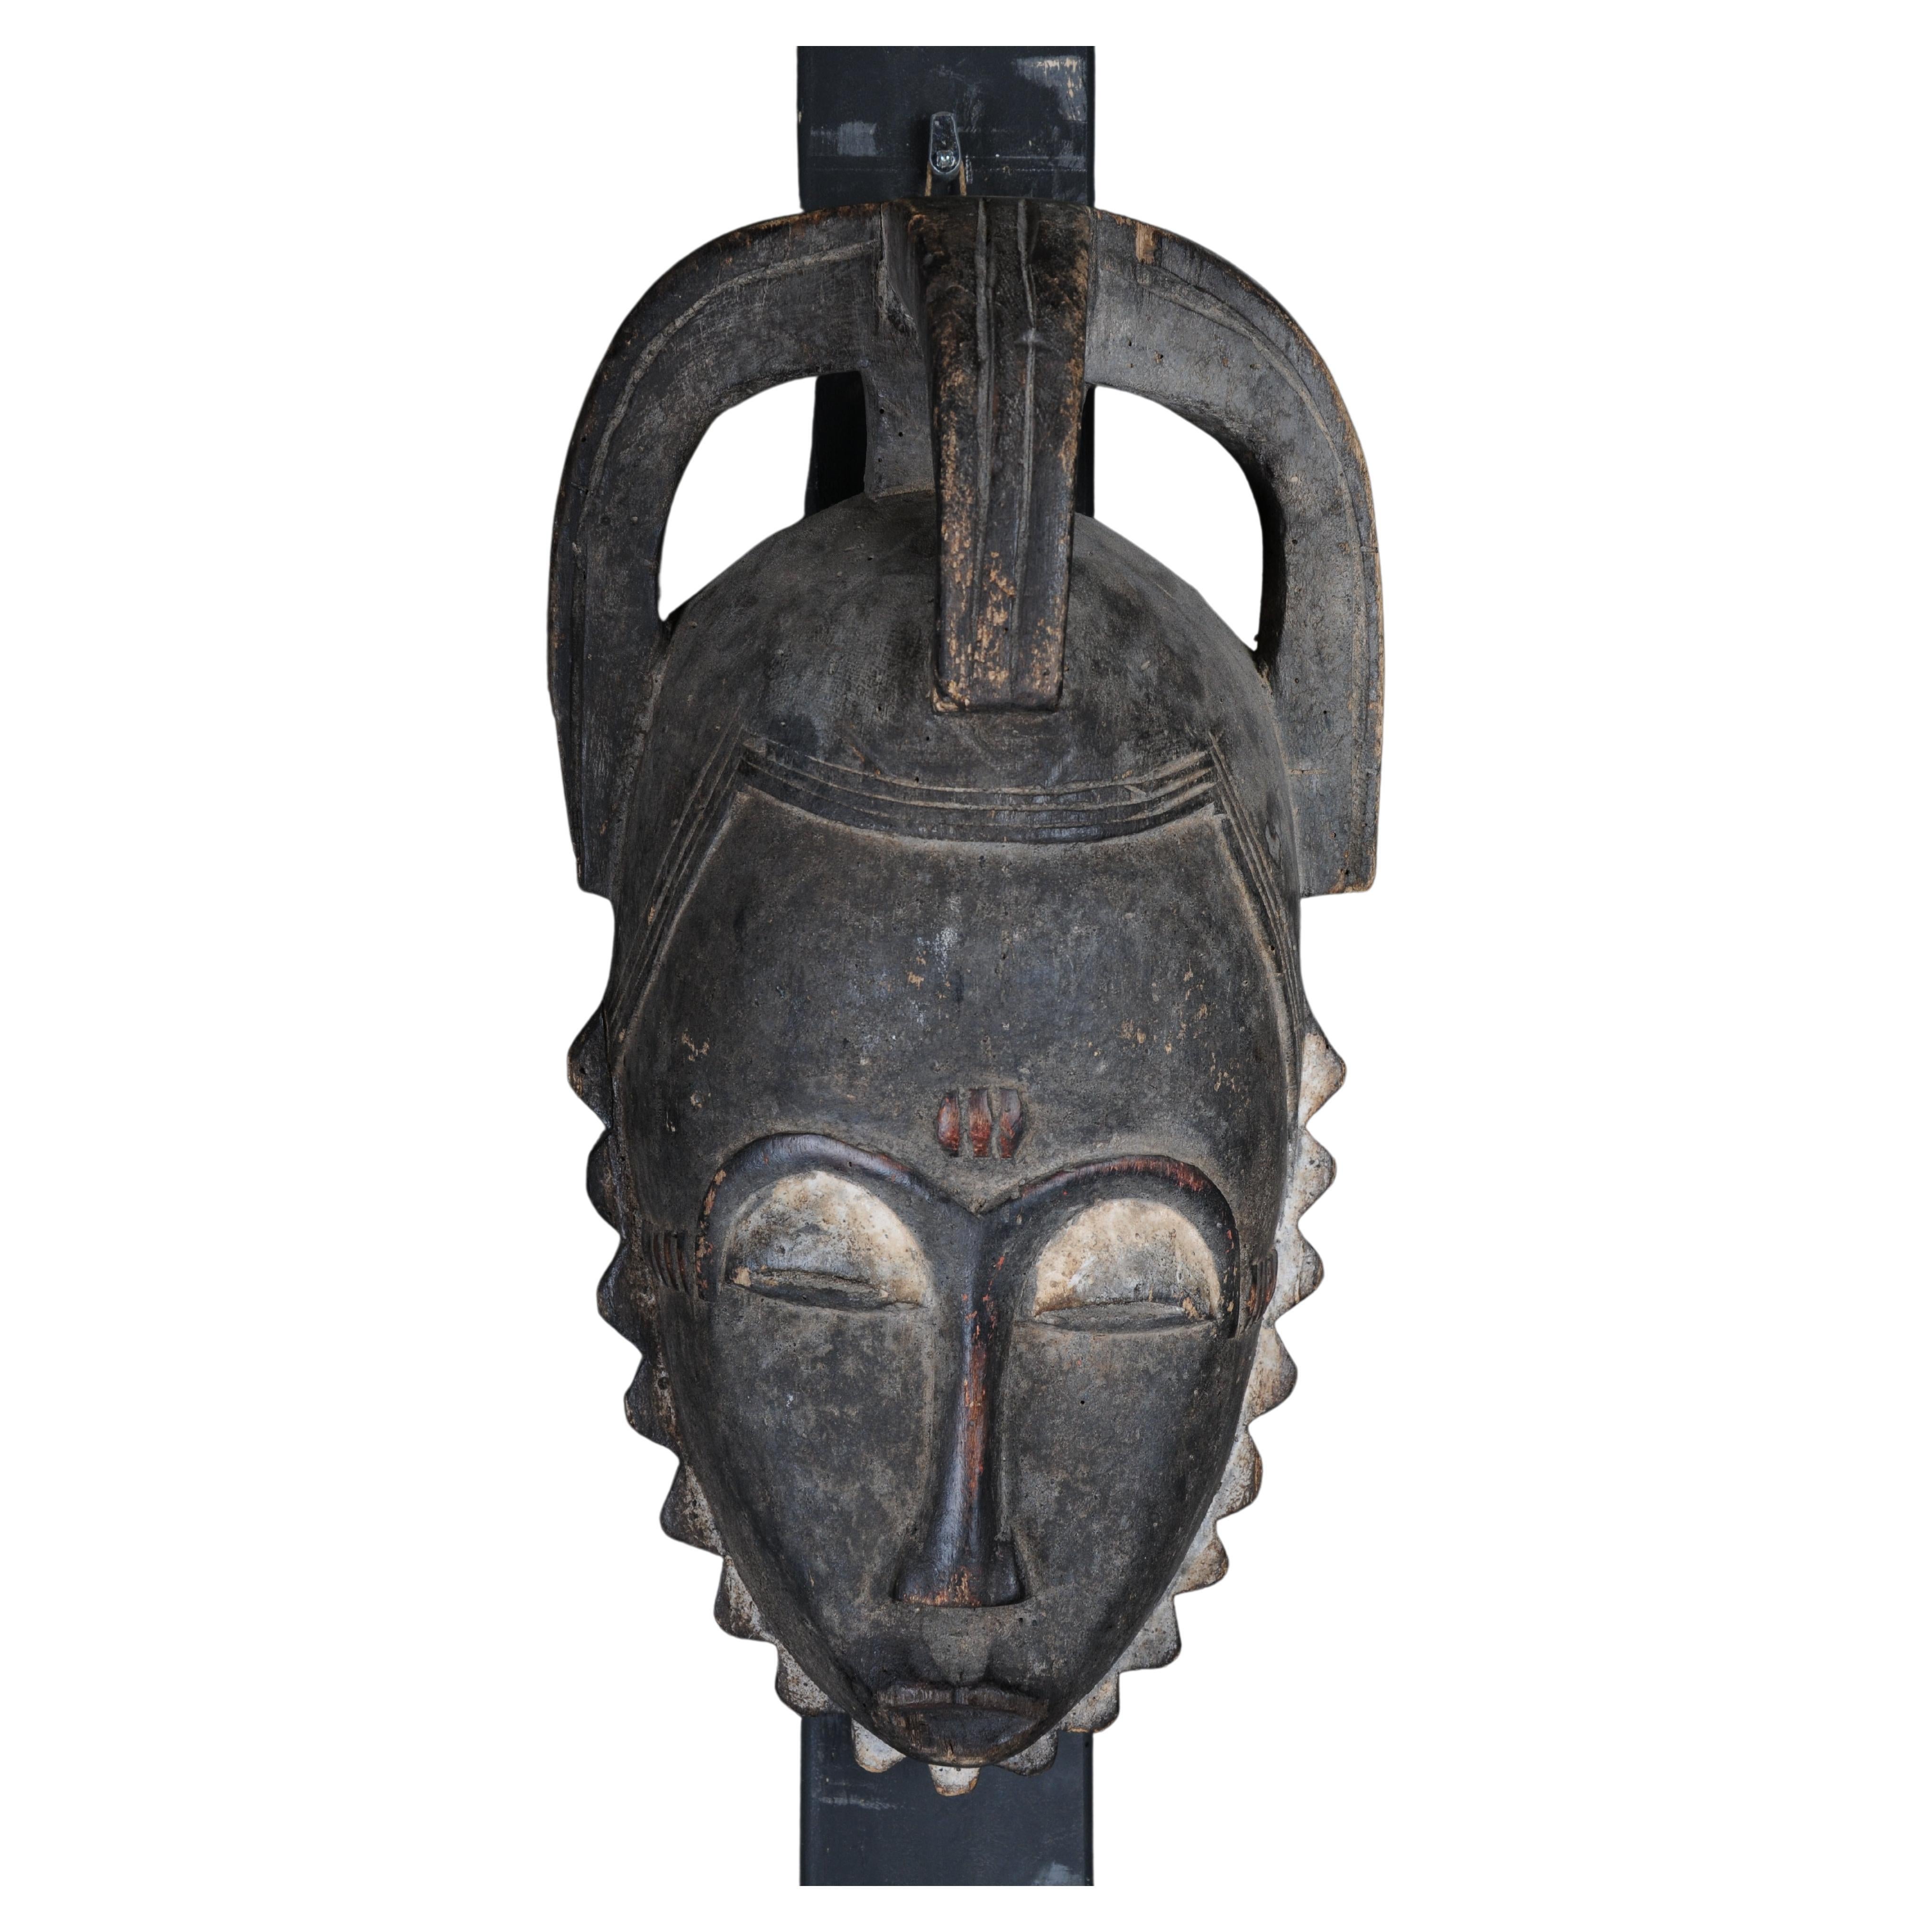 Masque facial en bois sculpté du 20e siècle, art populaire africain. Décoratif à suspendre